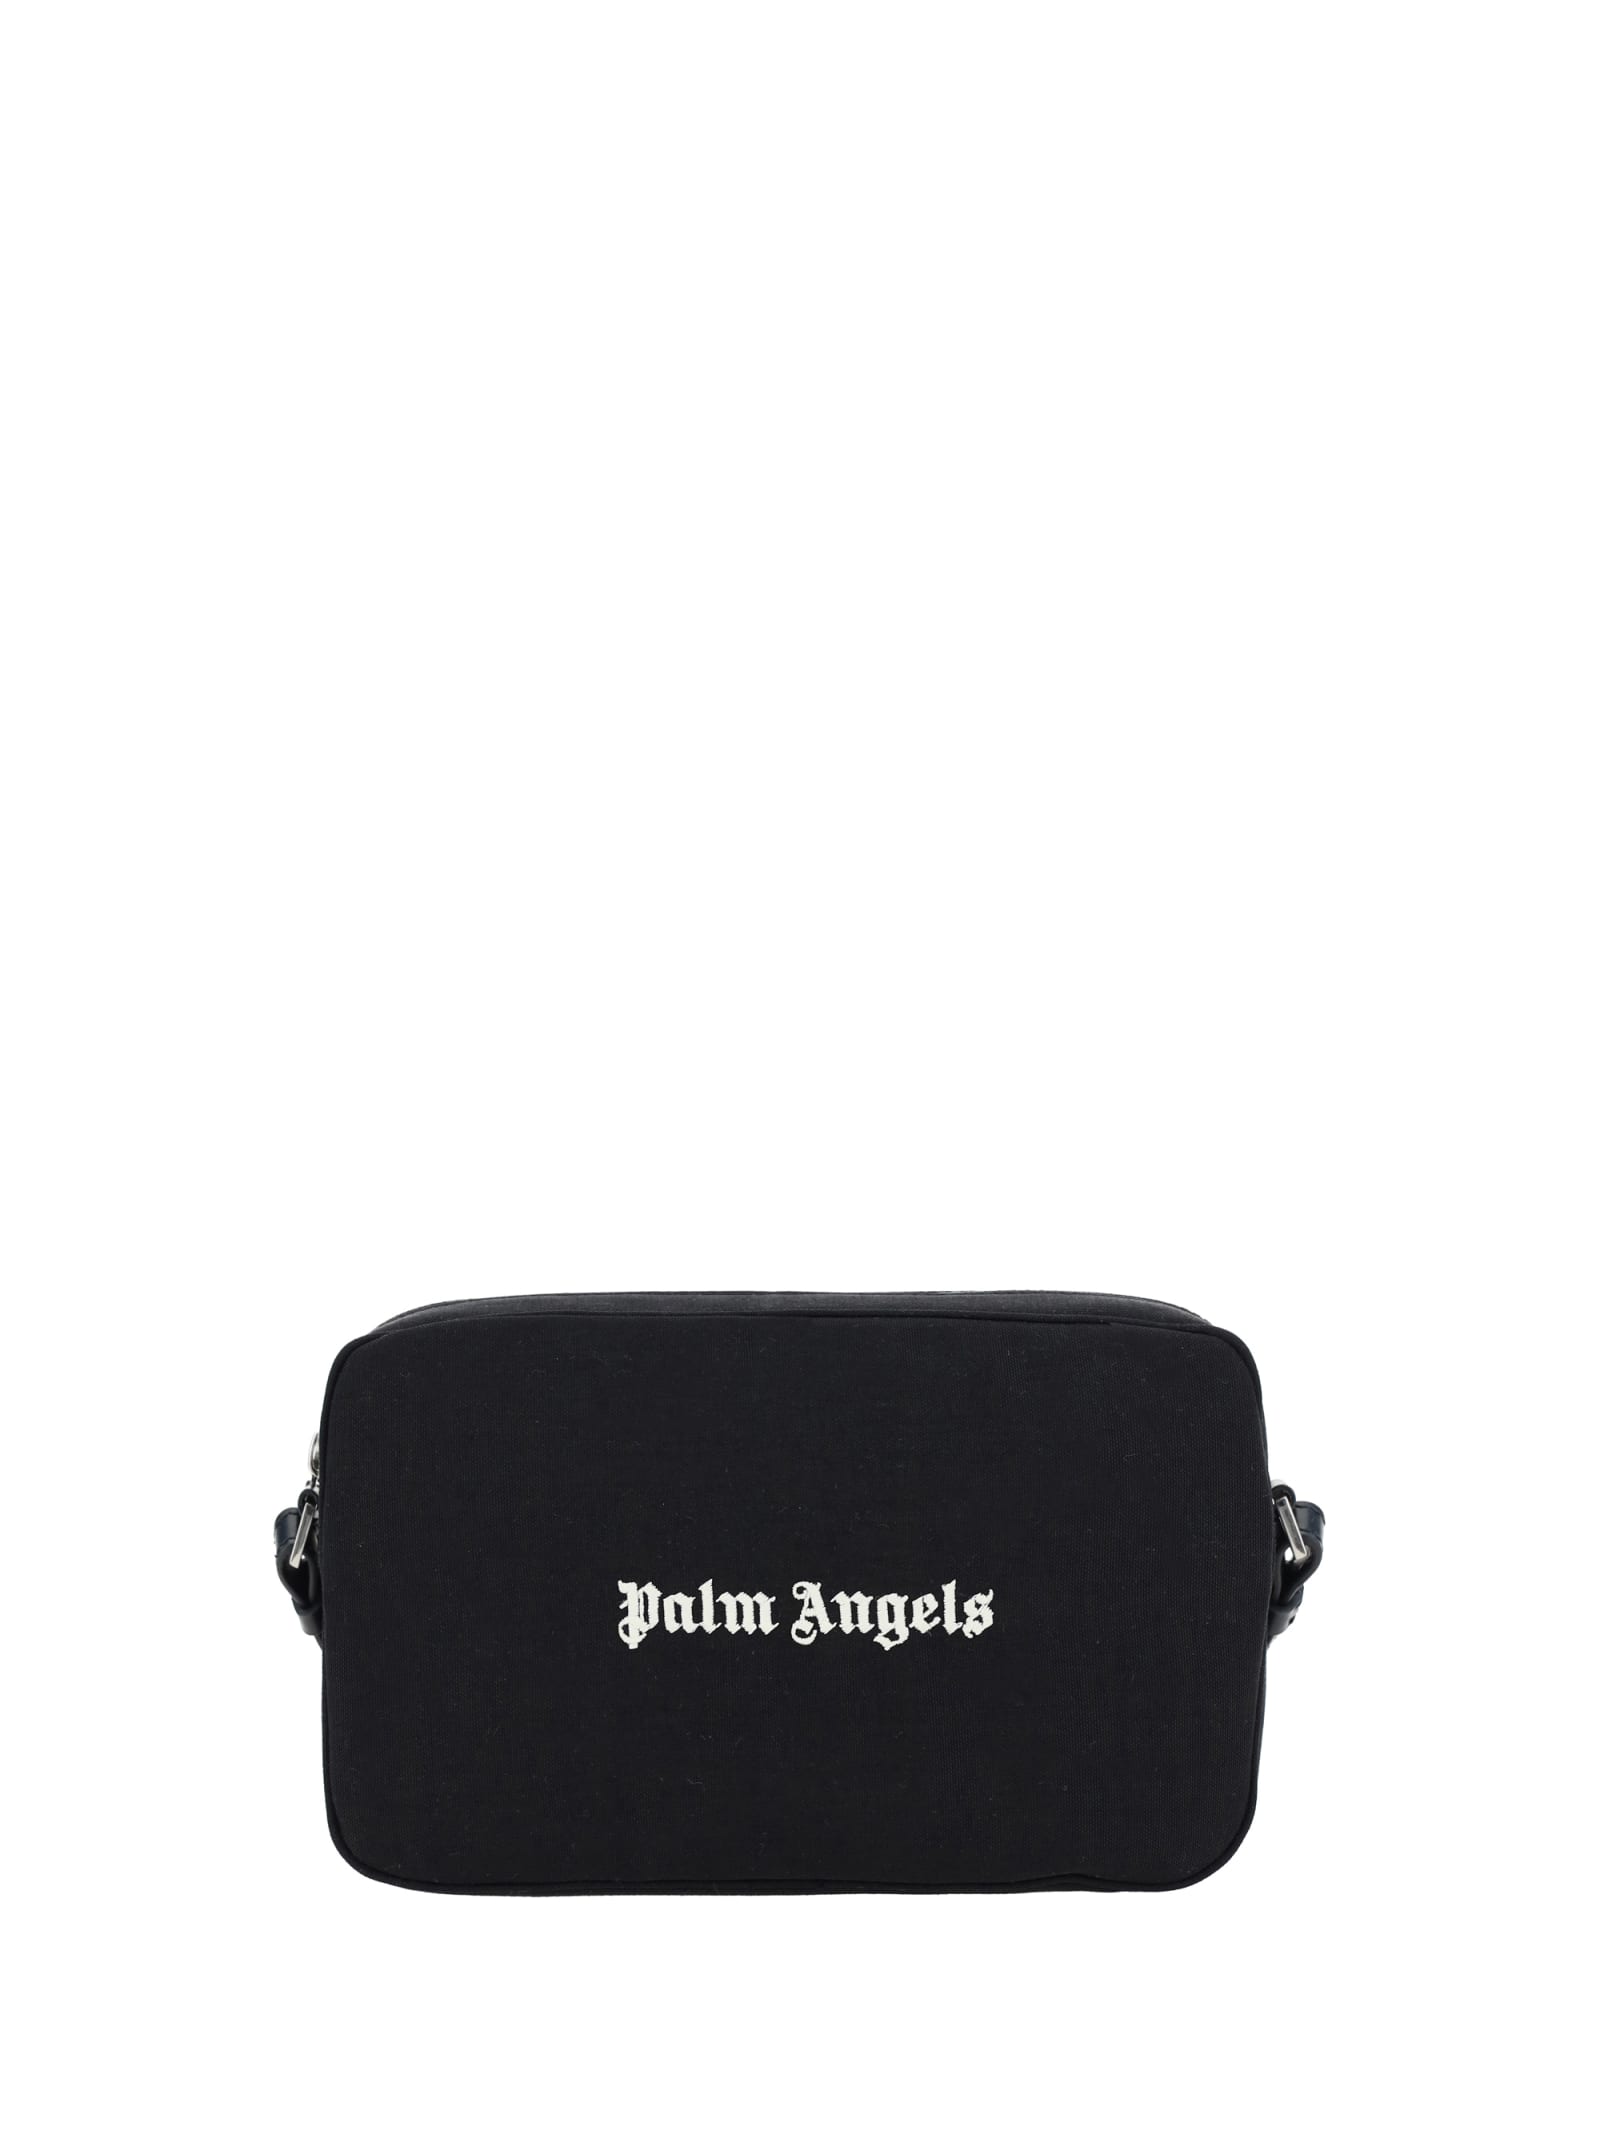 Palm Angels Shoulder Bag In Black/white